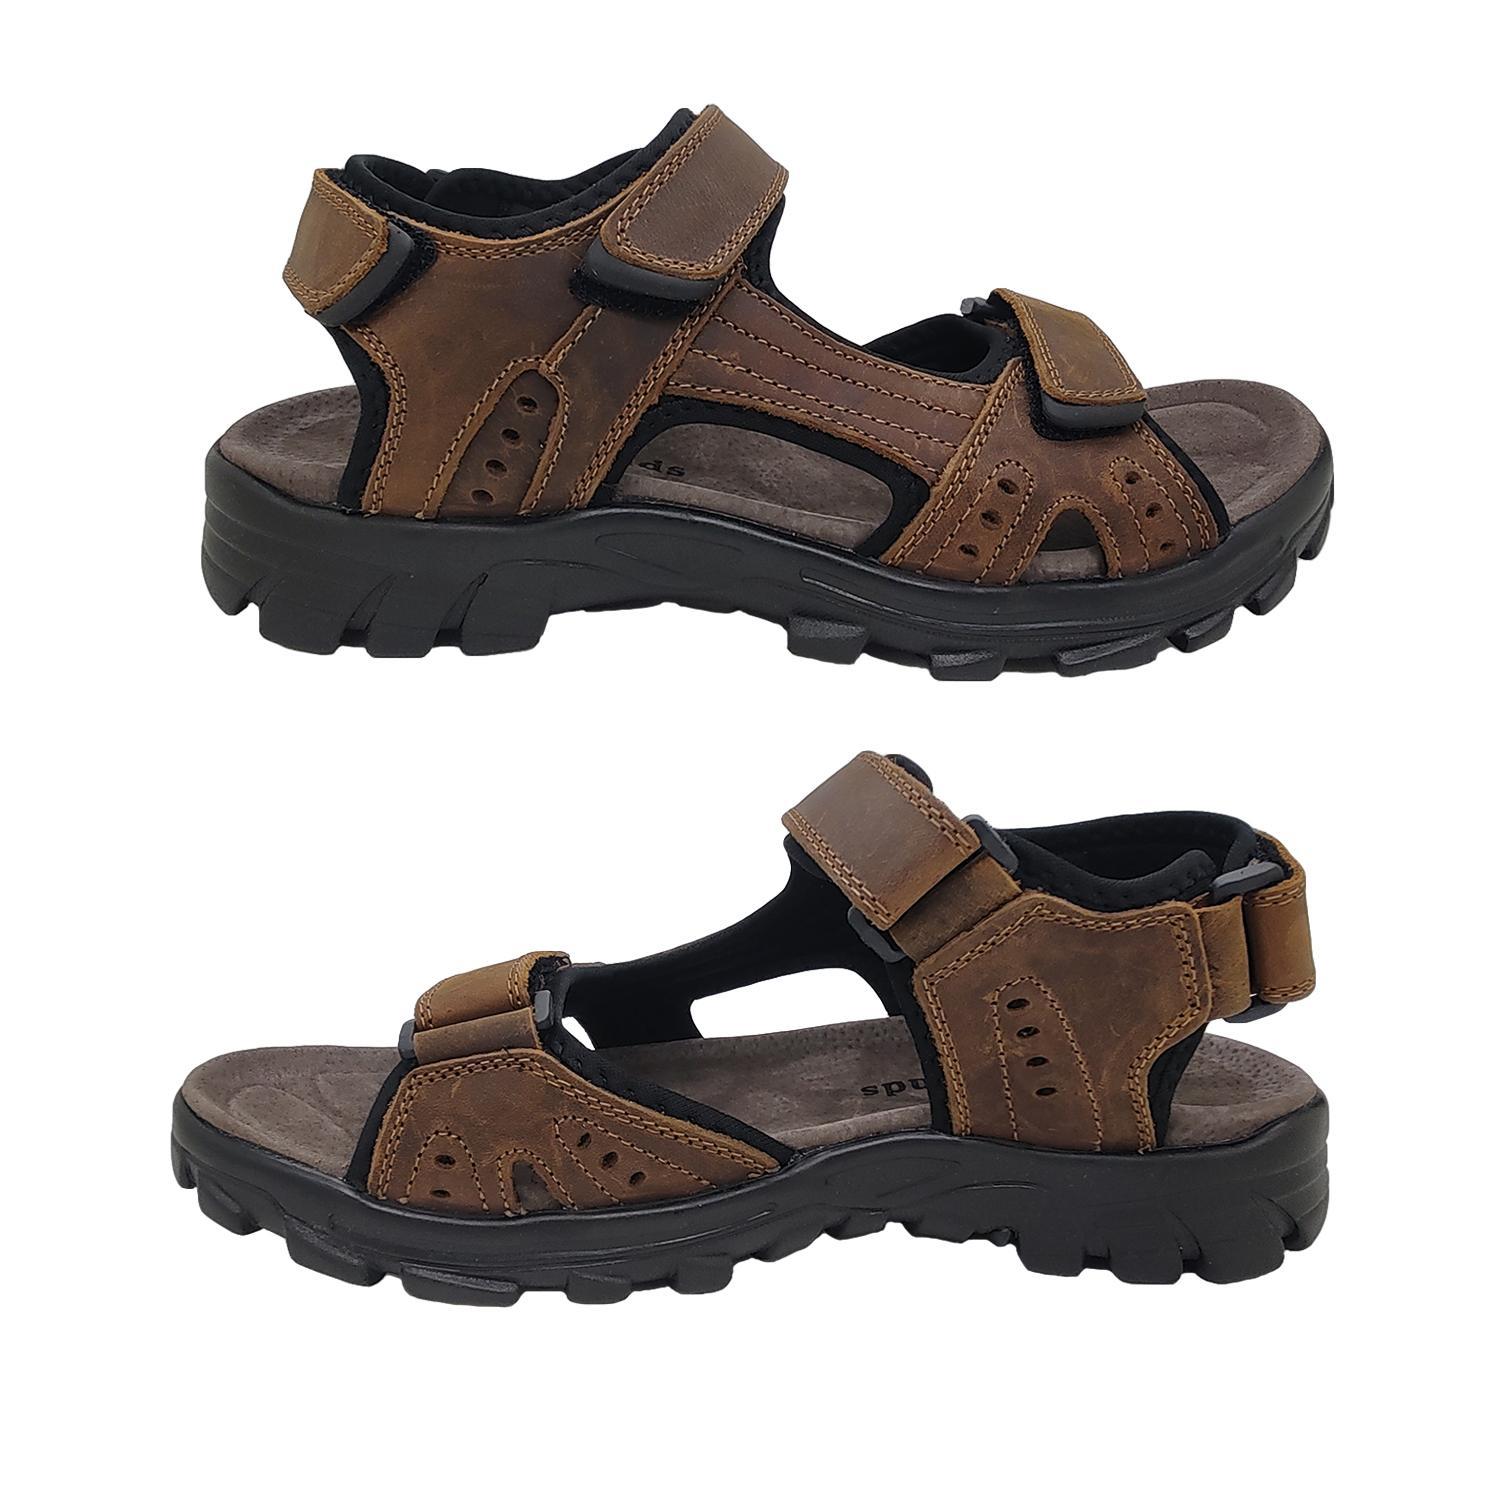 Woodlands Enrique Mens Sandals Leather Upper Multi Adjust Surf Style Comfort-Brown-6